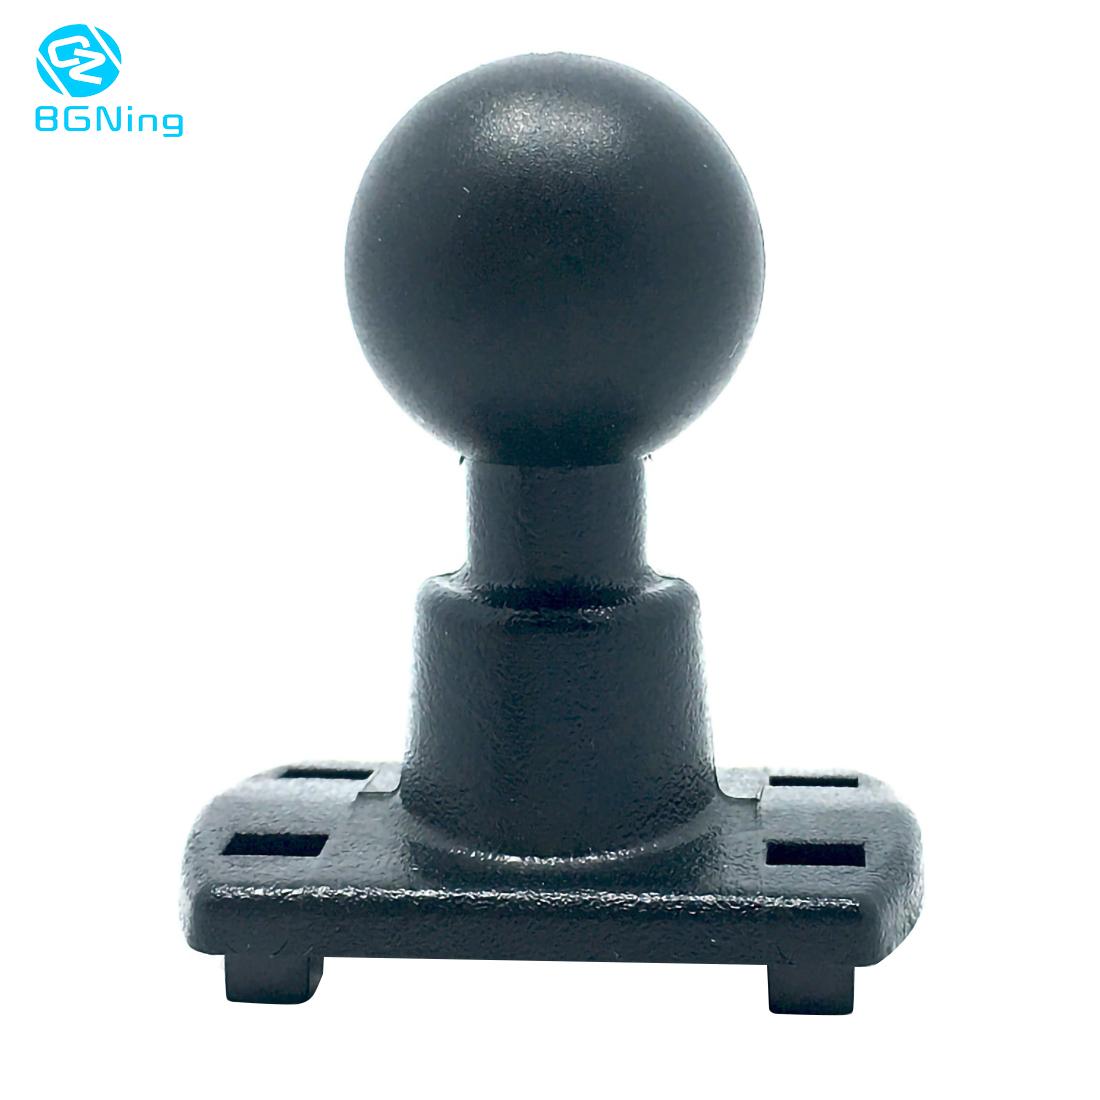 Bgning 4 Gat Klauwen Amps Adapter Plaat Met 1 Inch (25Mm) rubber Ball Compatibel Voor Ram Mounts Voor Camera 'S Voor Garmin Gps Dvr